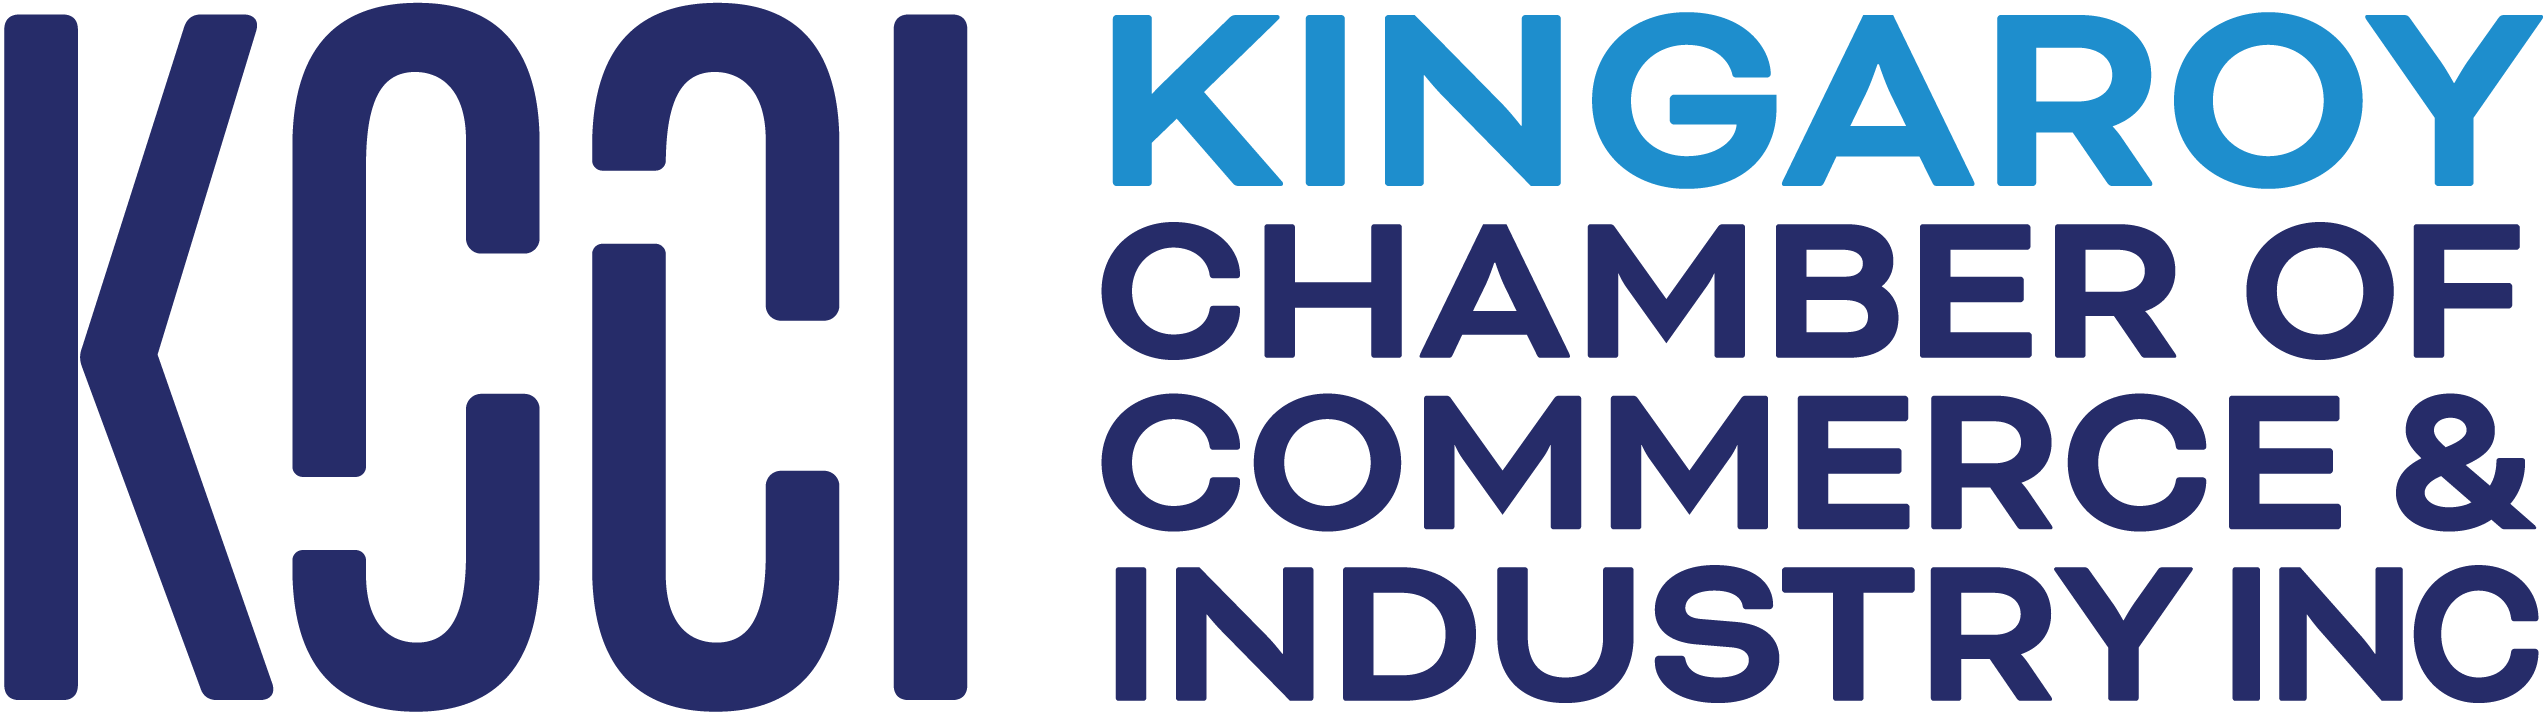 Kingaroy Chamber of Commerce